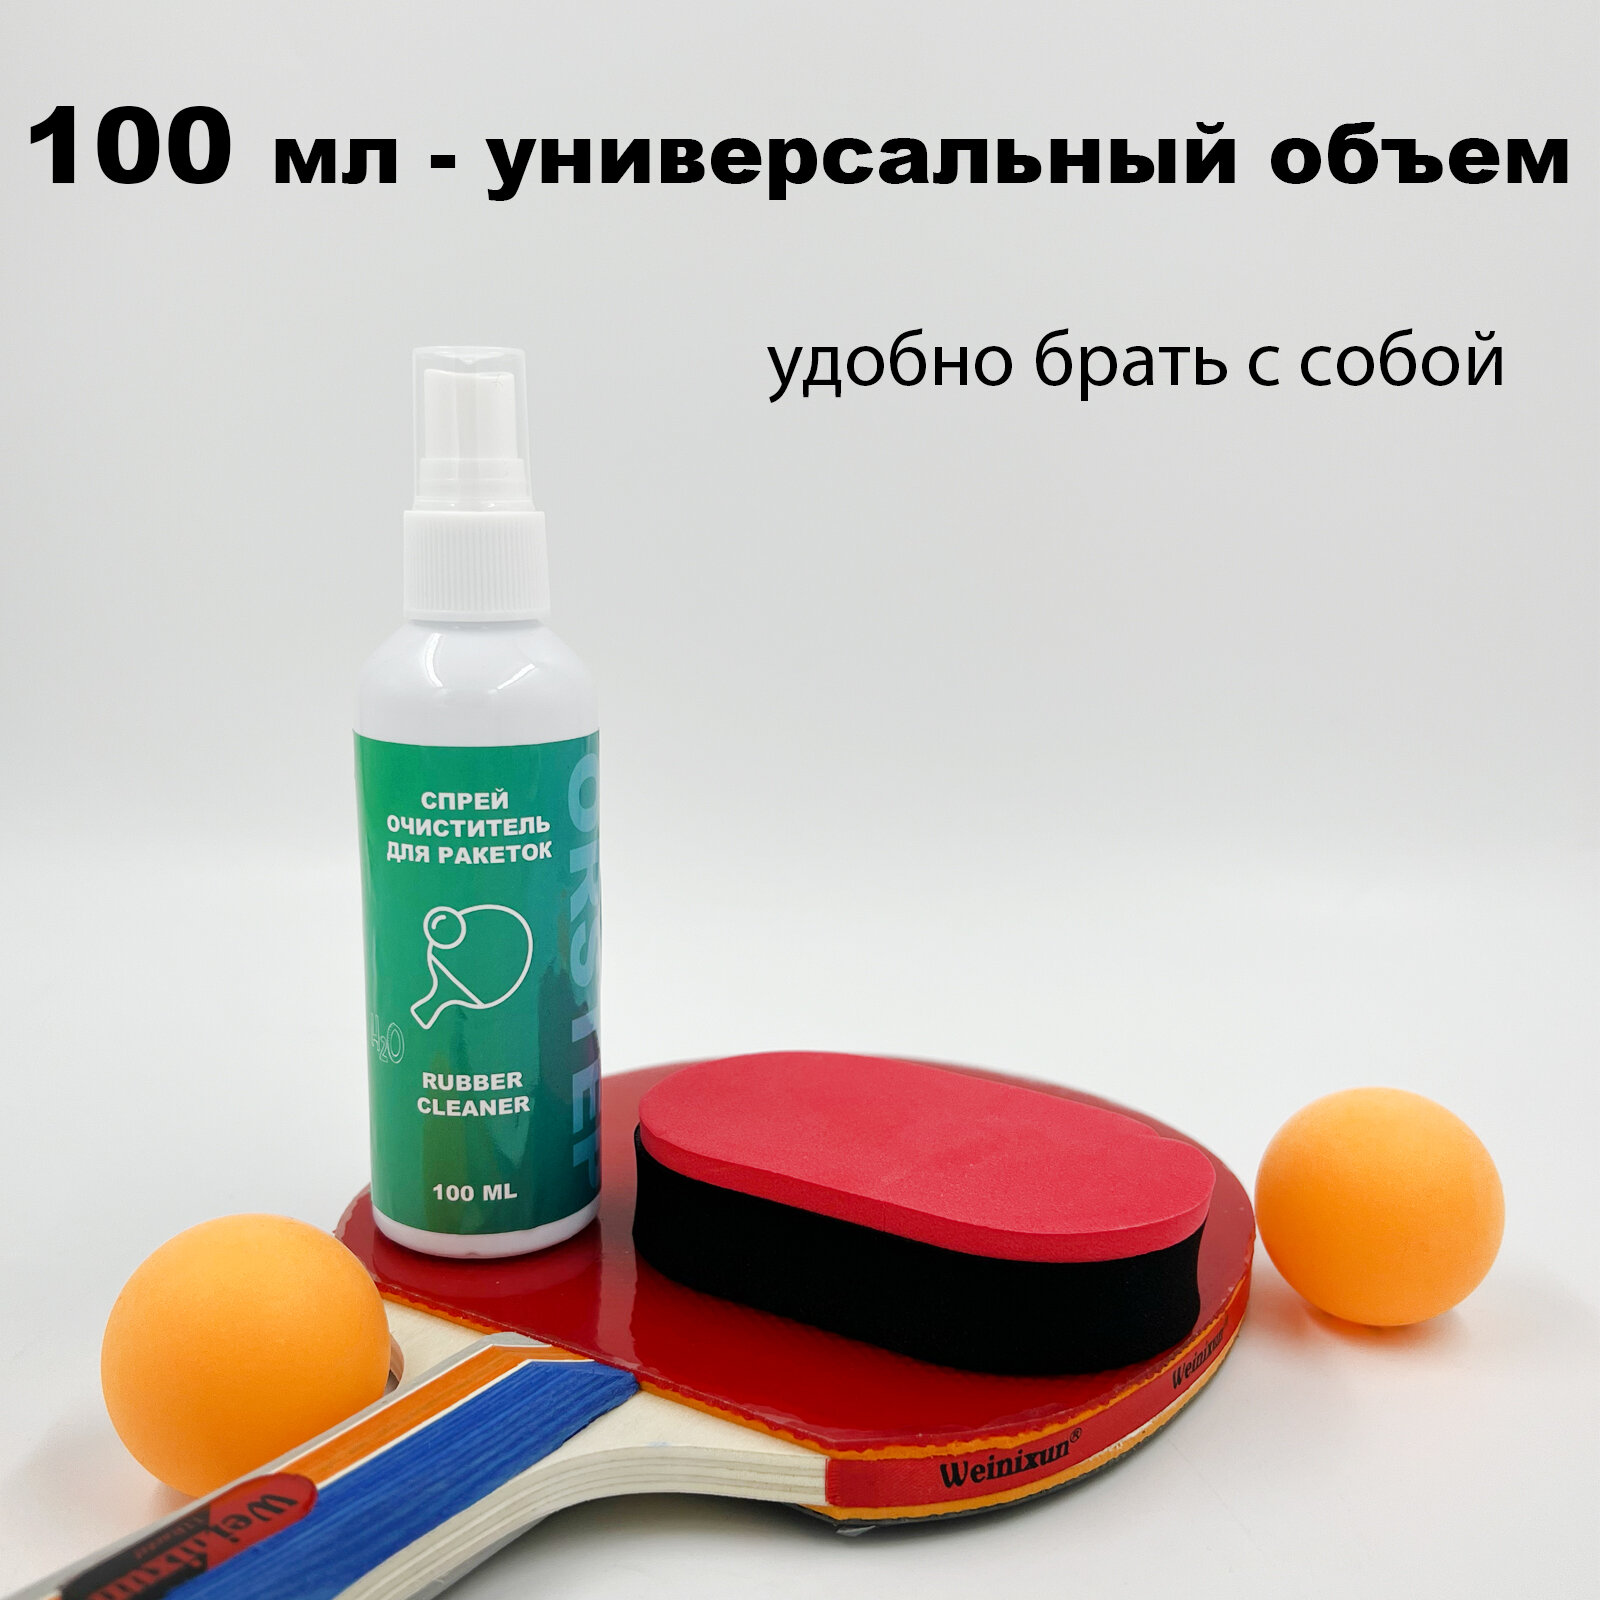 Очиститель накладок ракетки настольного тенниса. Чистящая губка + жидкость (100 мл.)